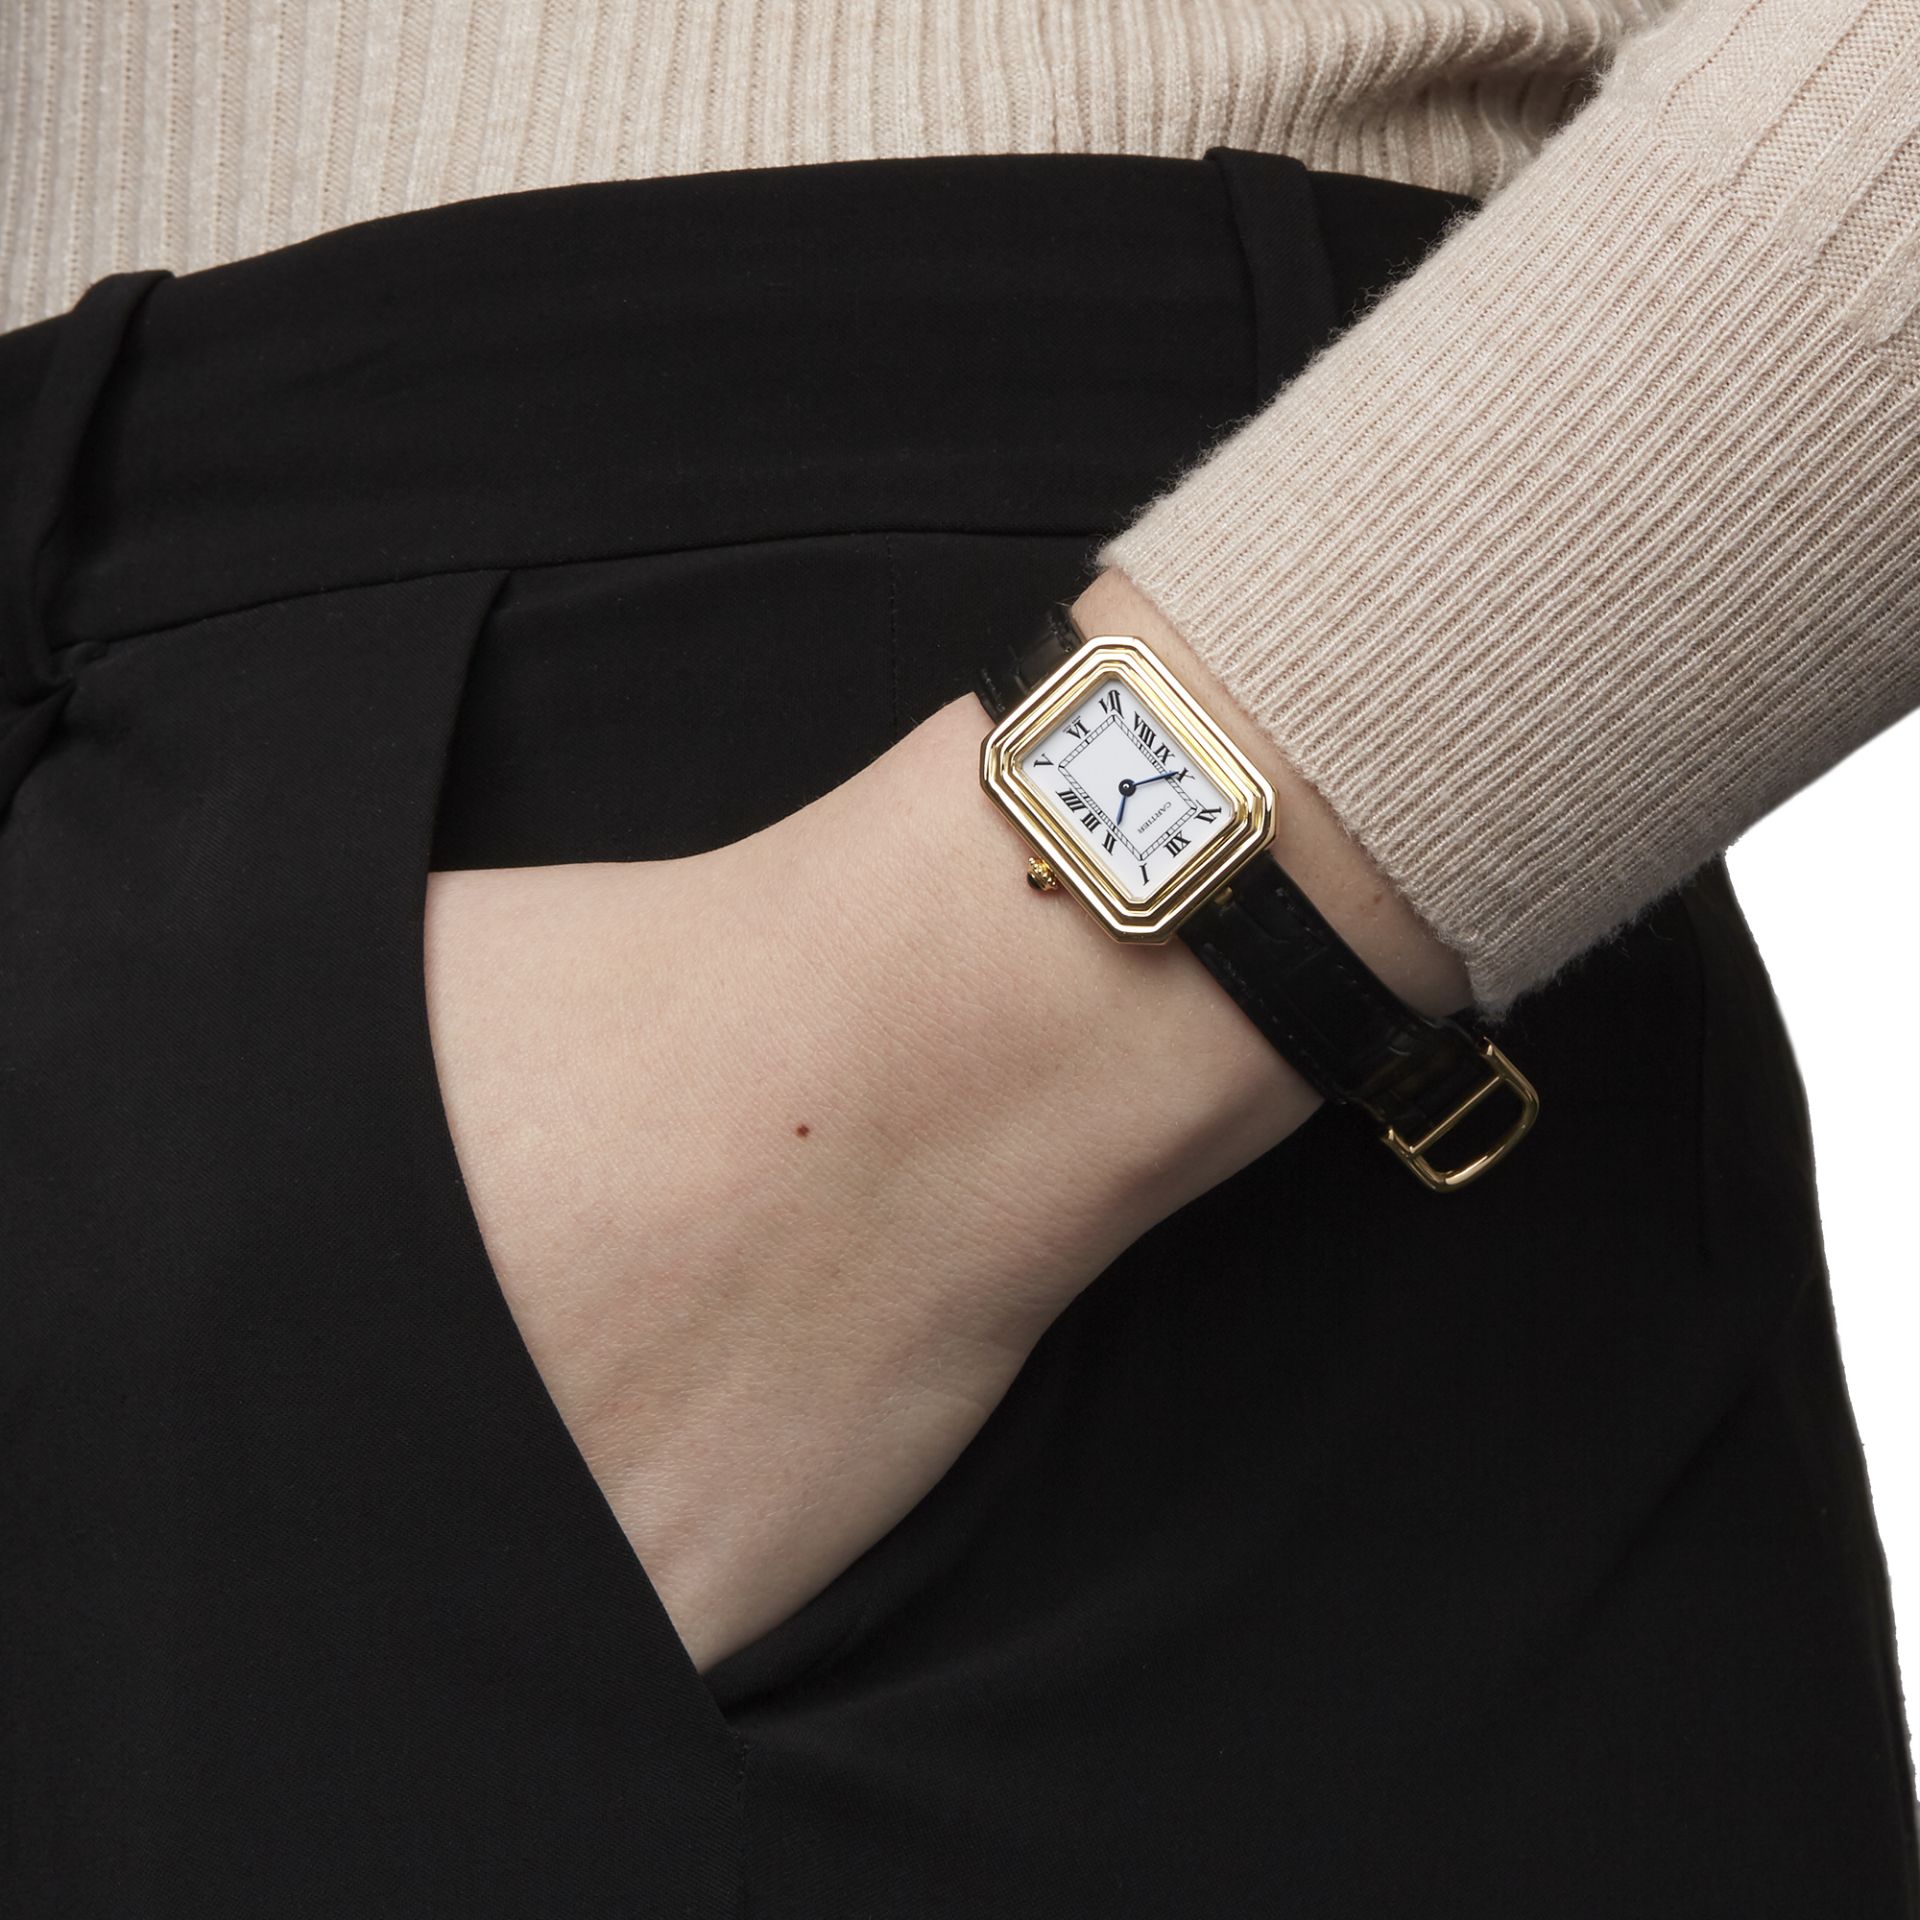 Cartier Cristallor Ladies Yellow Gold Paris Mecanique Watch - Image 2 of 8